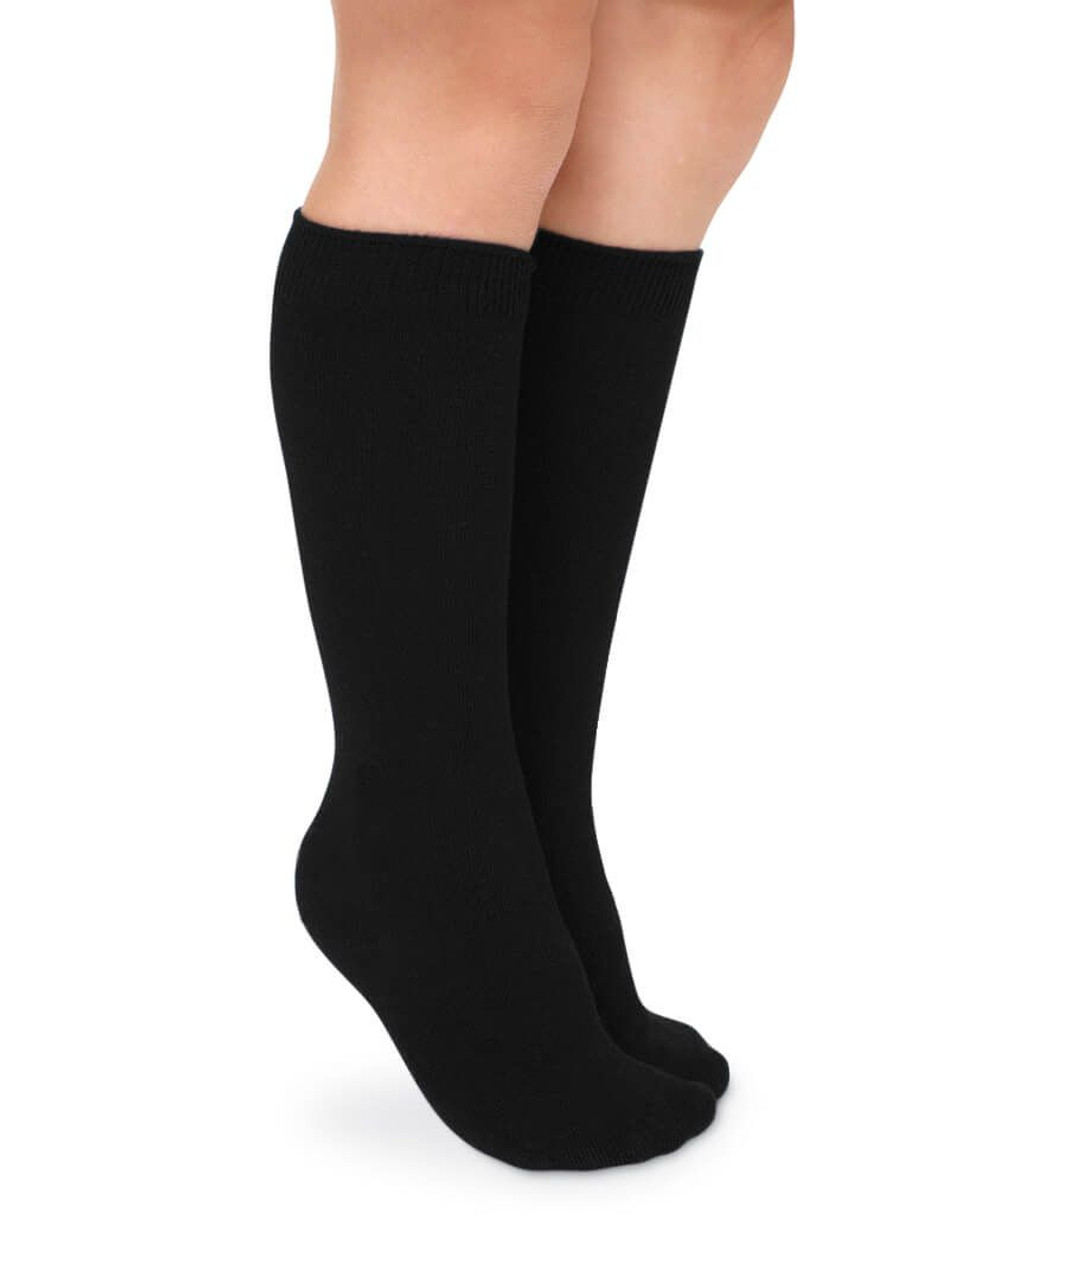 Jefferies Socks Knee High 2 Pairs Unisex Socks 1600 in Black -  SnapdragonsBaby